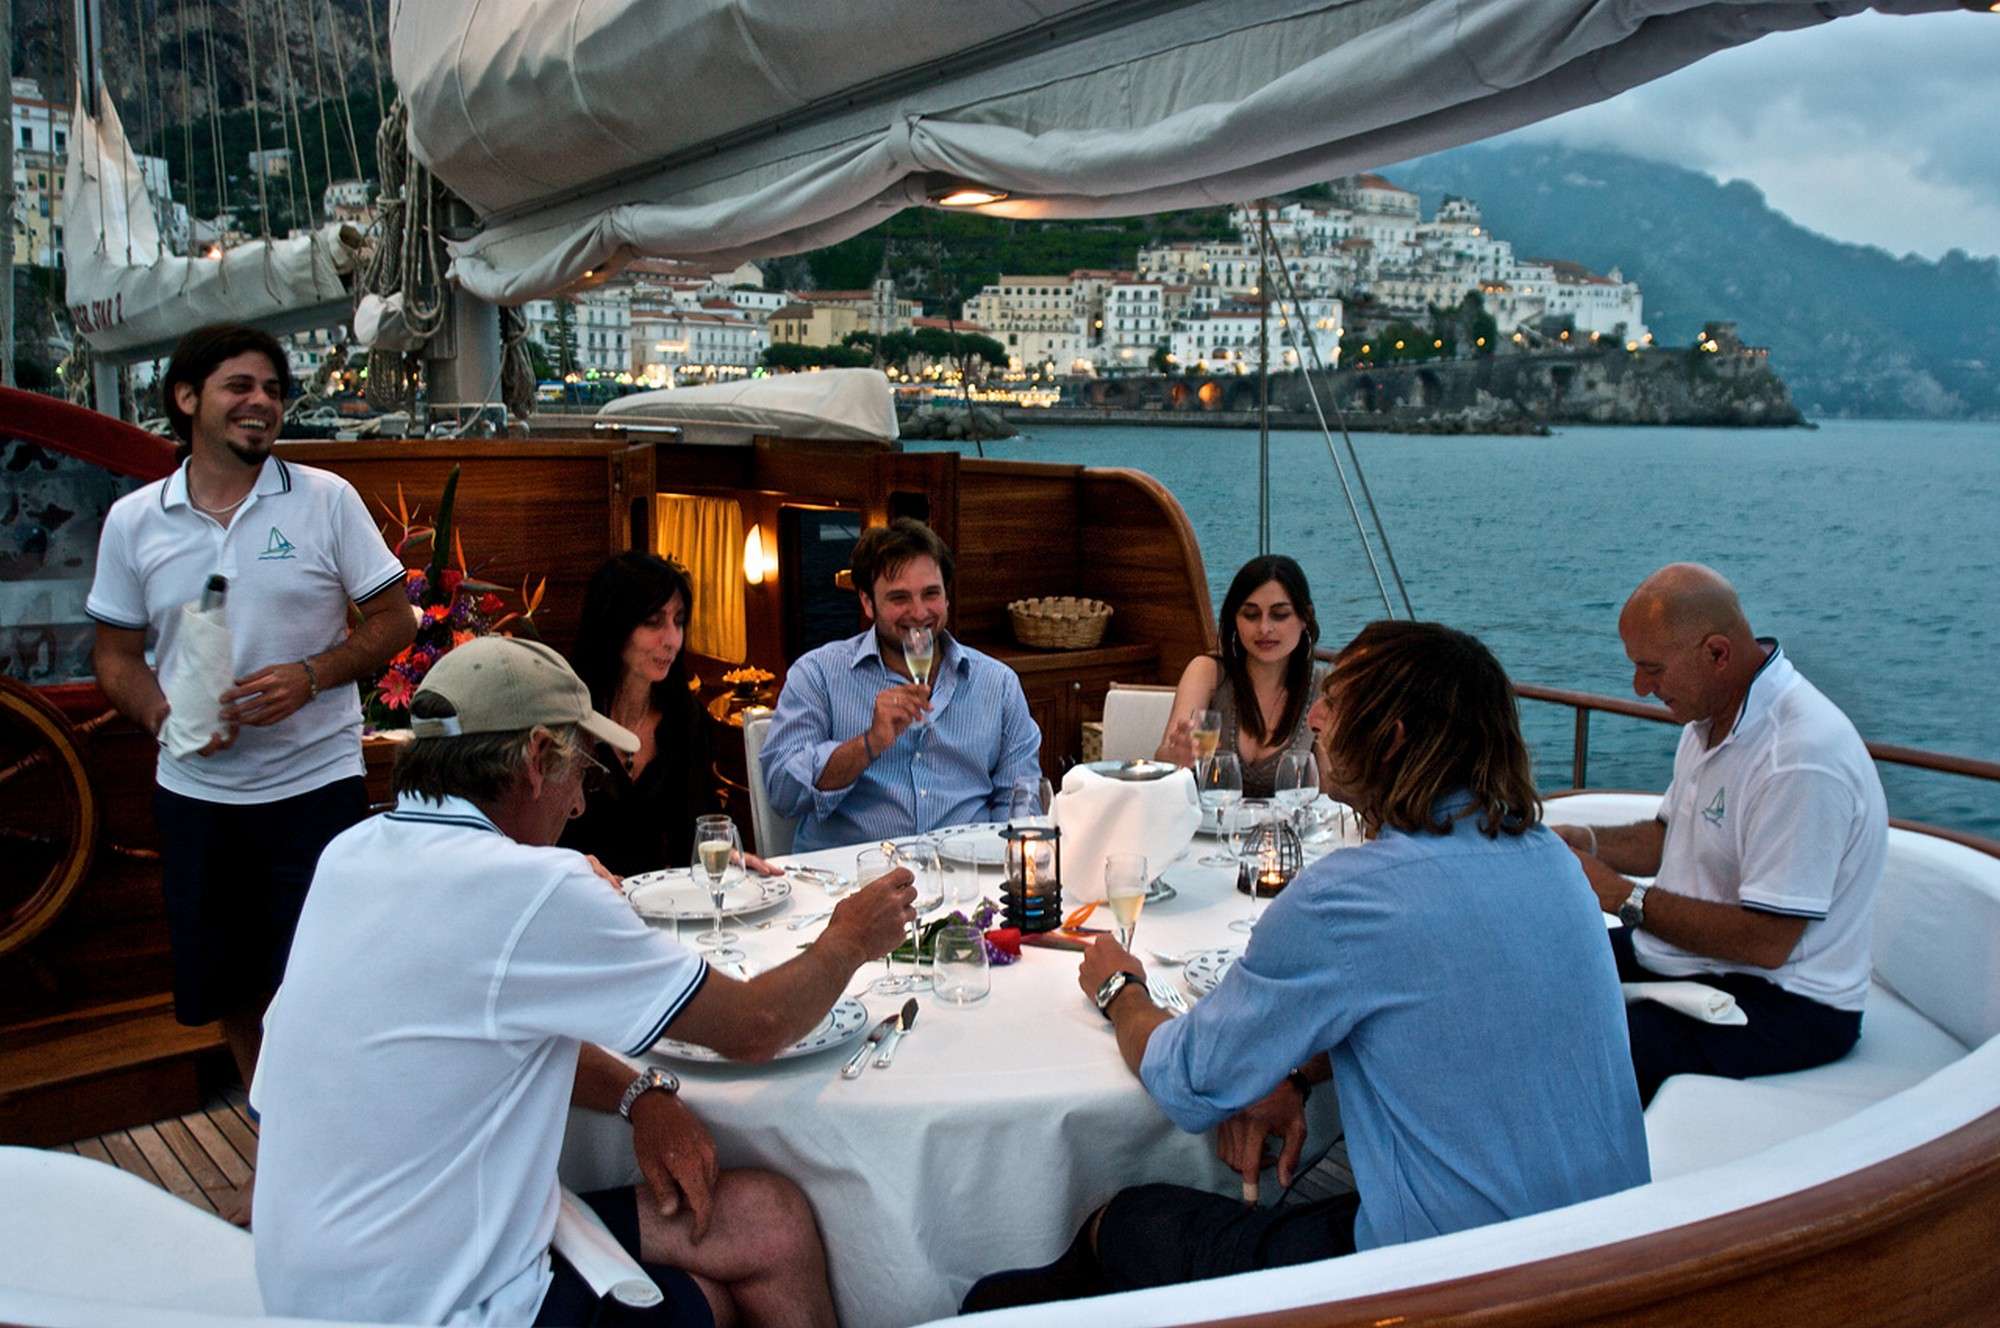 SILVER STAR 2 - Yacht Charter Monaco & Boat hire in Fr. Riviera & Tyrrhenian Sea 3